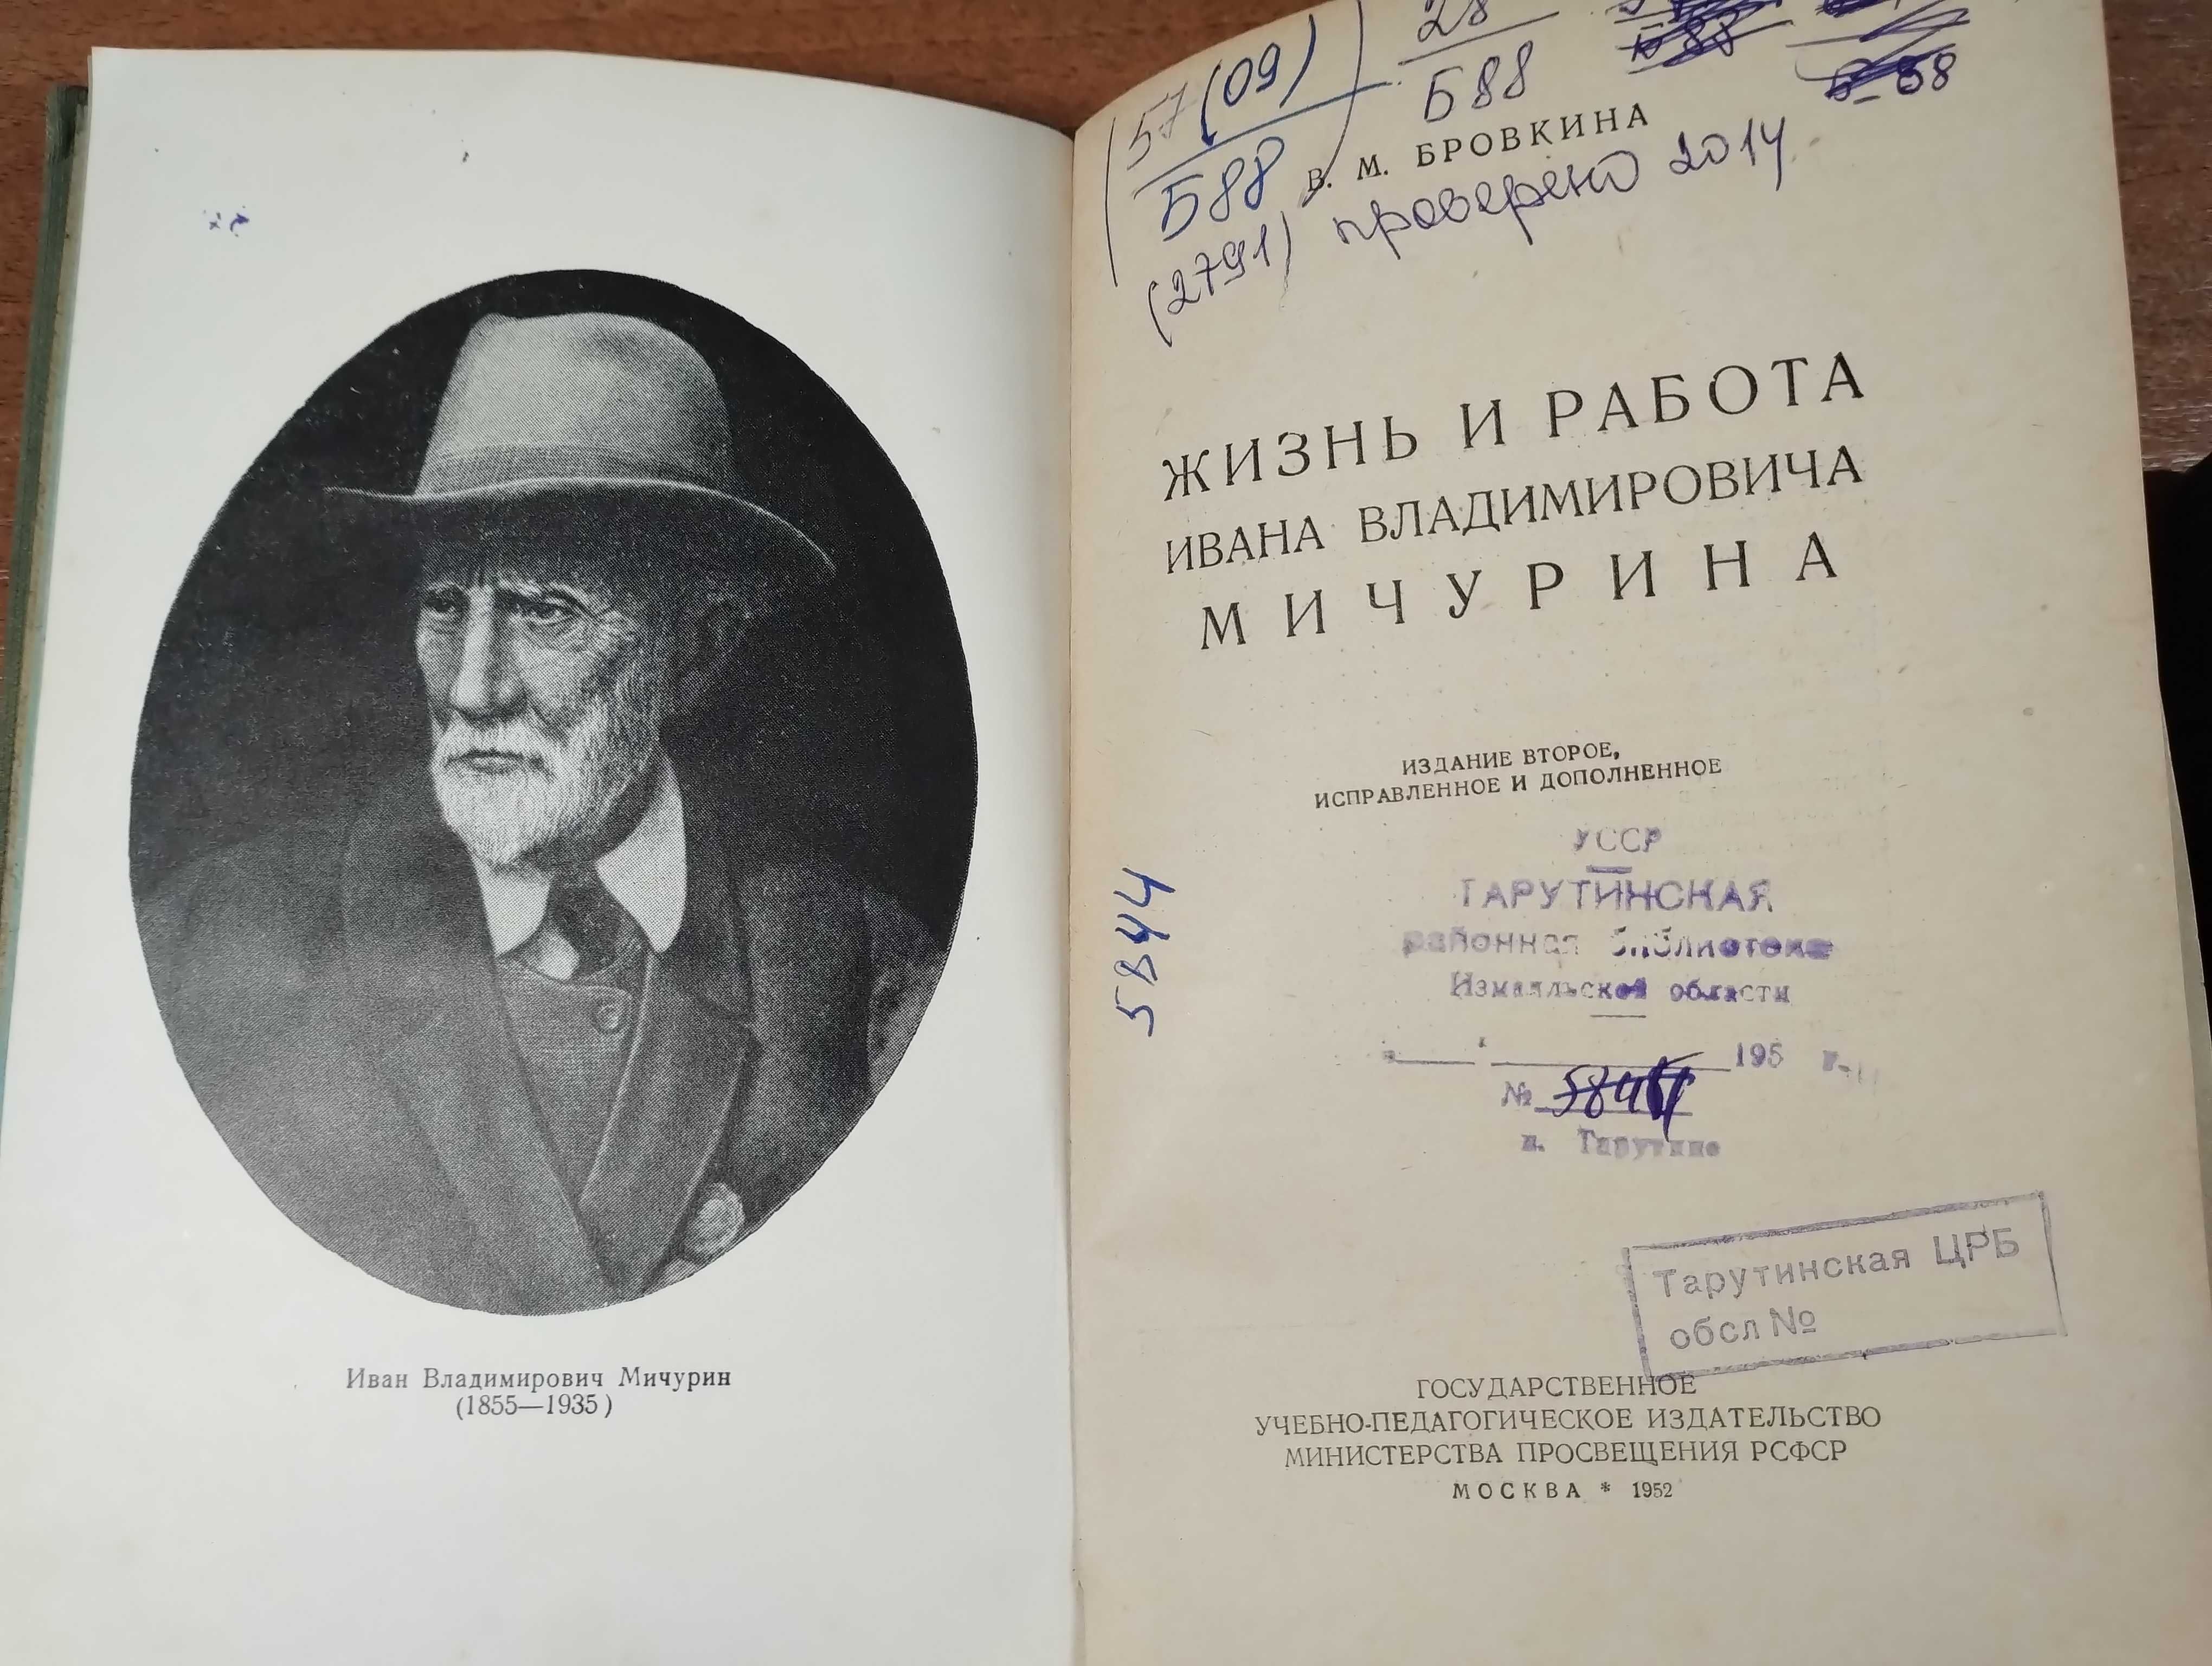 Мичурин Избранные сочинения (1948), Жизнь и работа Мичурина (1952)